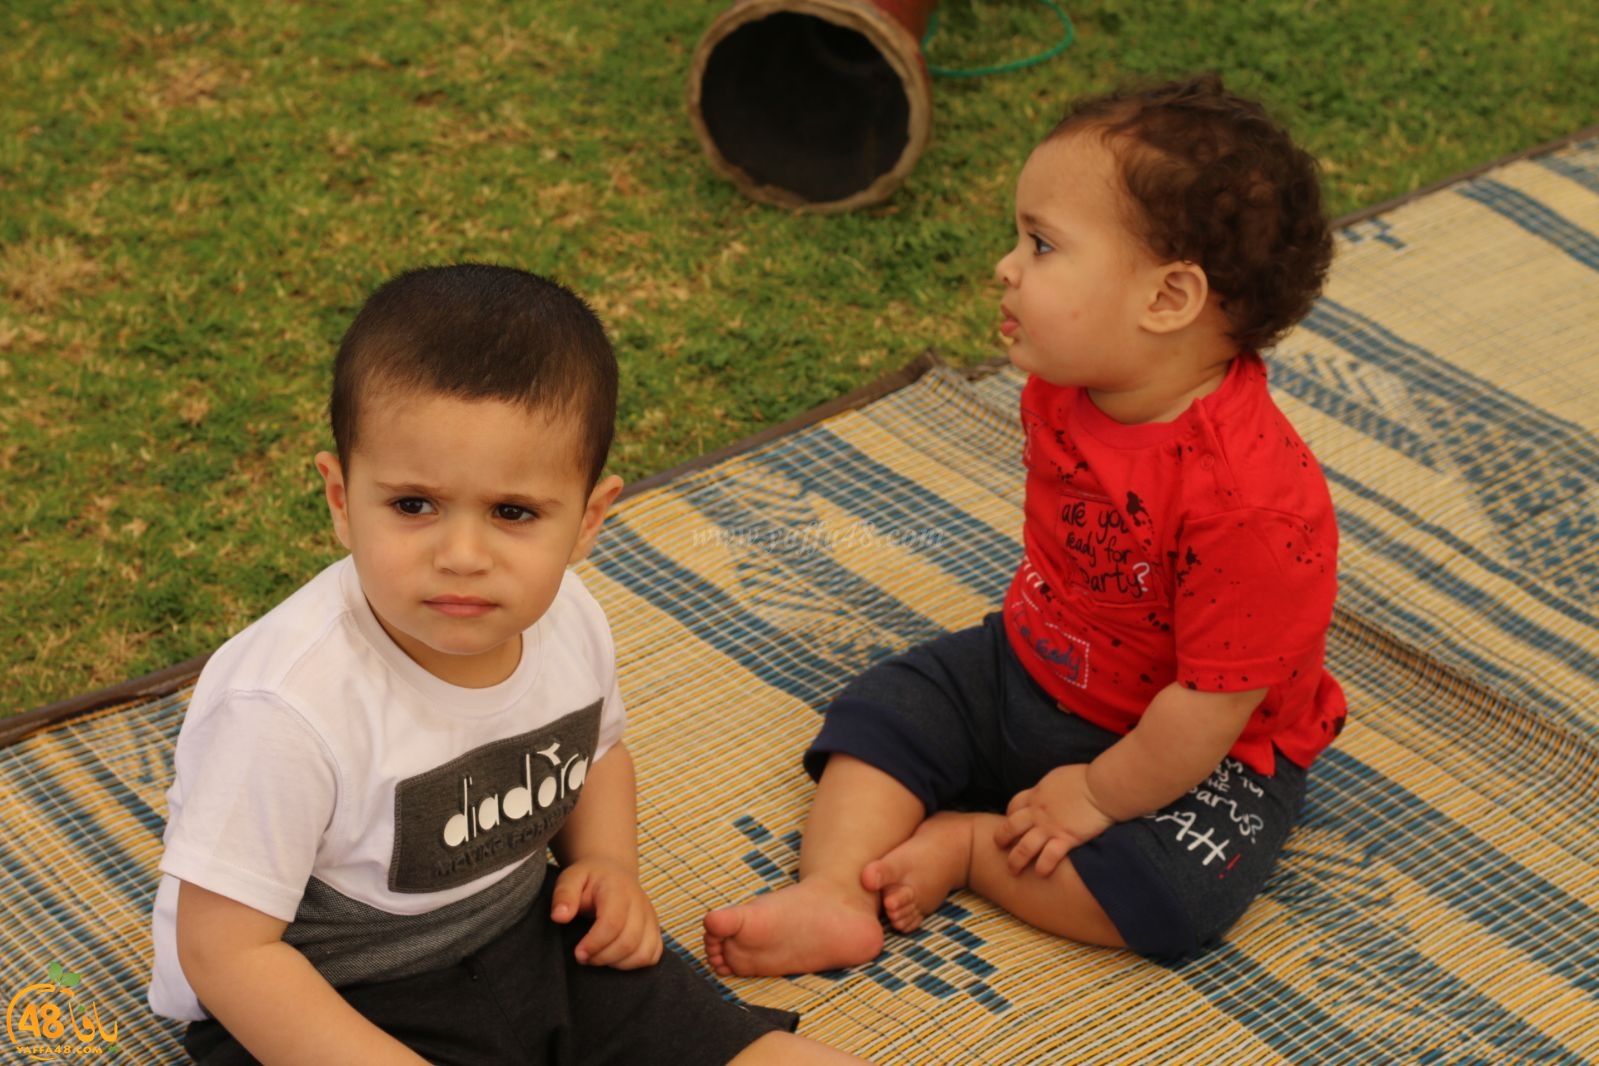  بالصور: فعاليات شيّقة للأطفال وأكشاك بيع في البازار النسائي السنوي بيافا